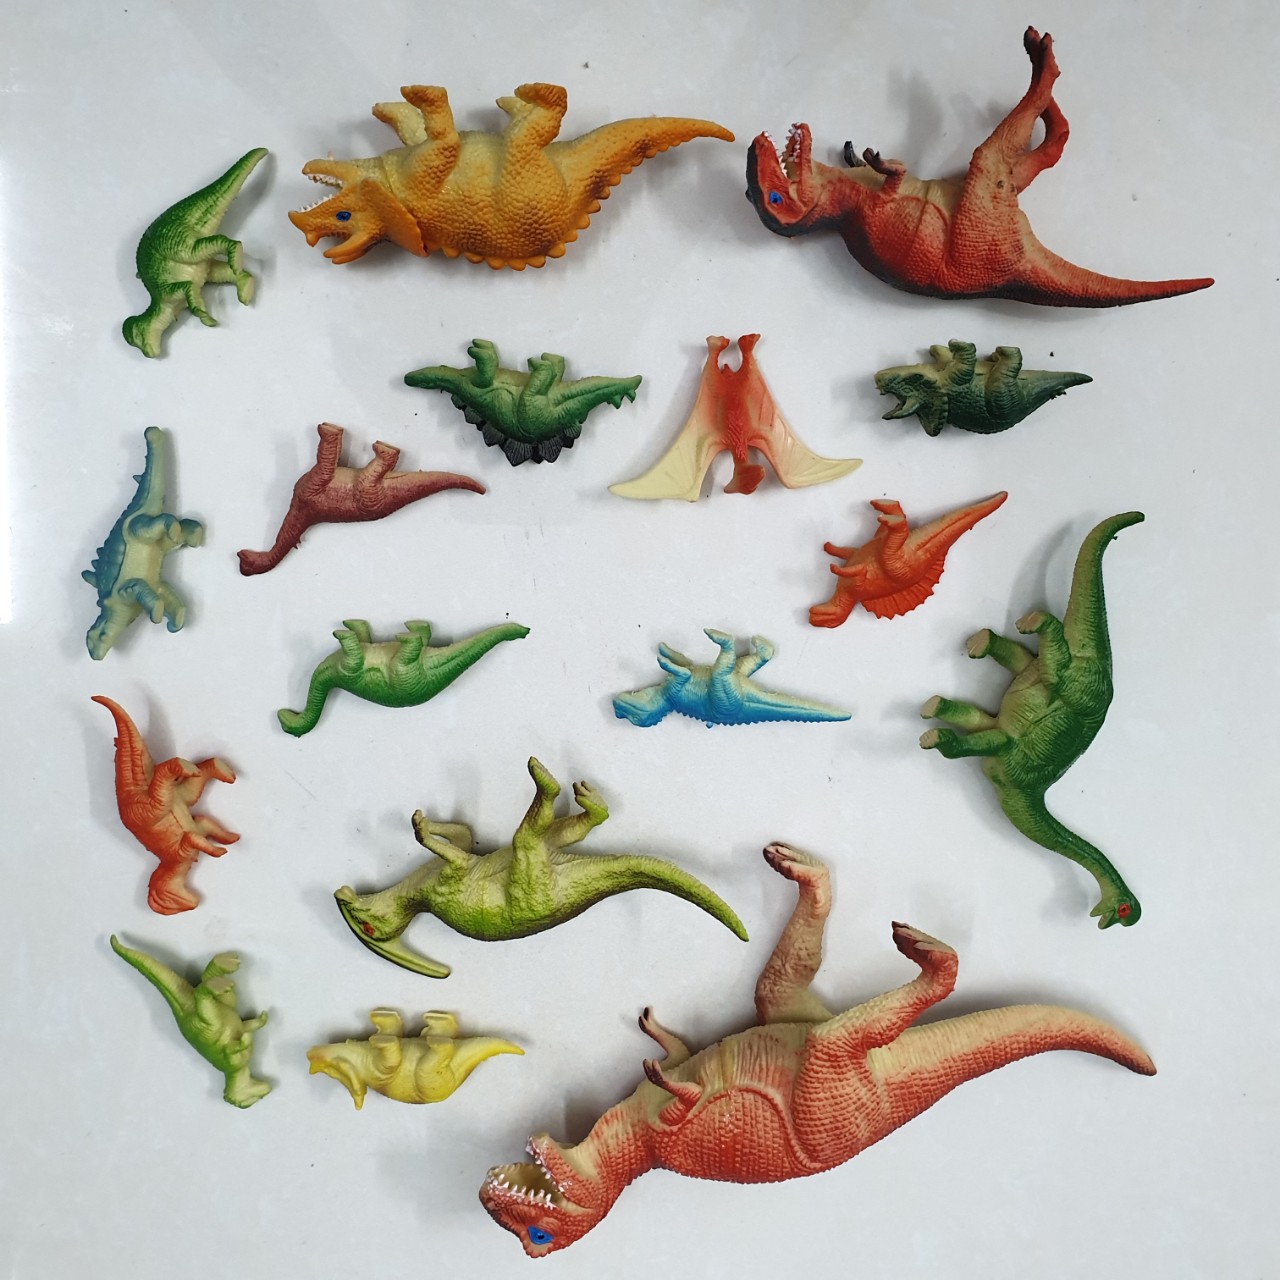 Bộ 16 mô hình khủng long kỉ Jurassic World Dinosaurs dành cho bé 5 tuổi trở lên làm đồ chơi, kích thích trí tò mò, tăng khả năng ghi nhớ và học hỏi về thế giới khủng long